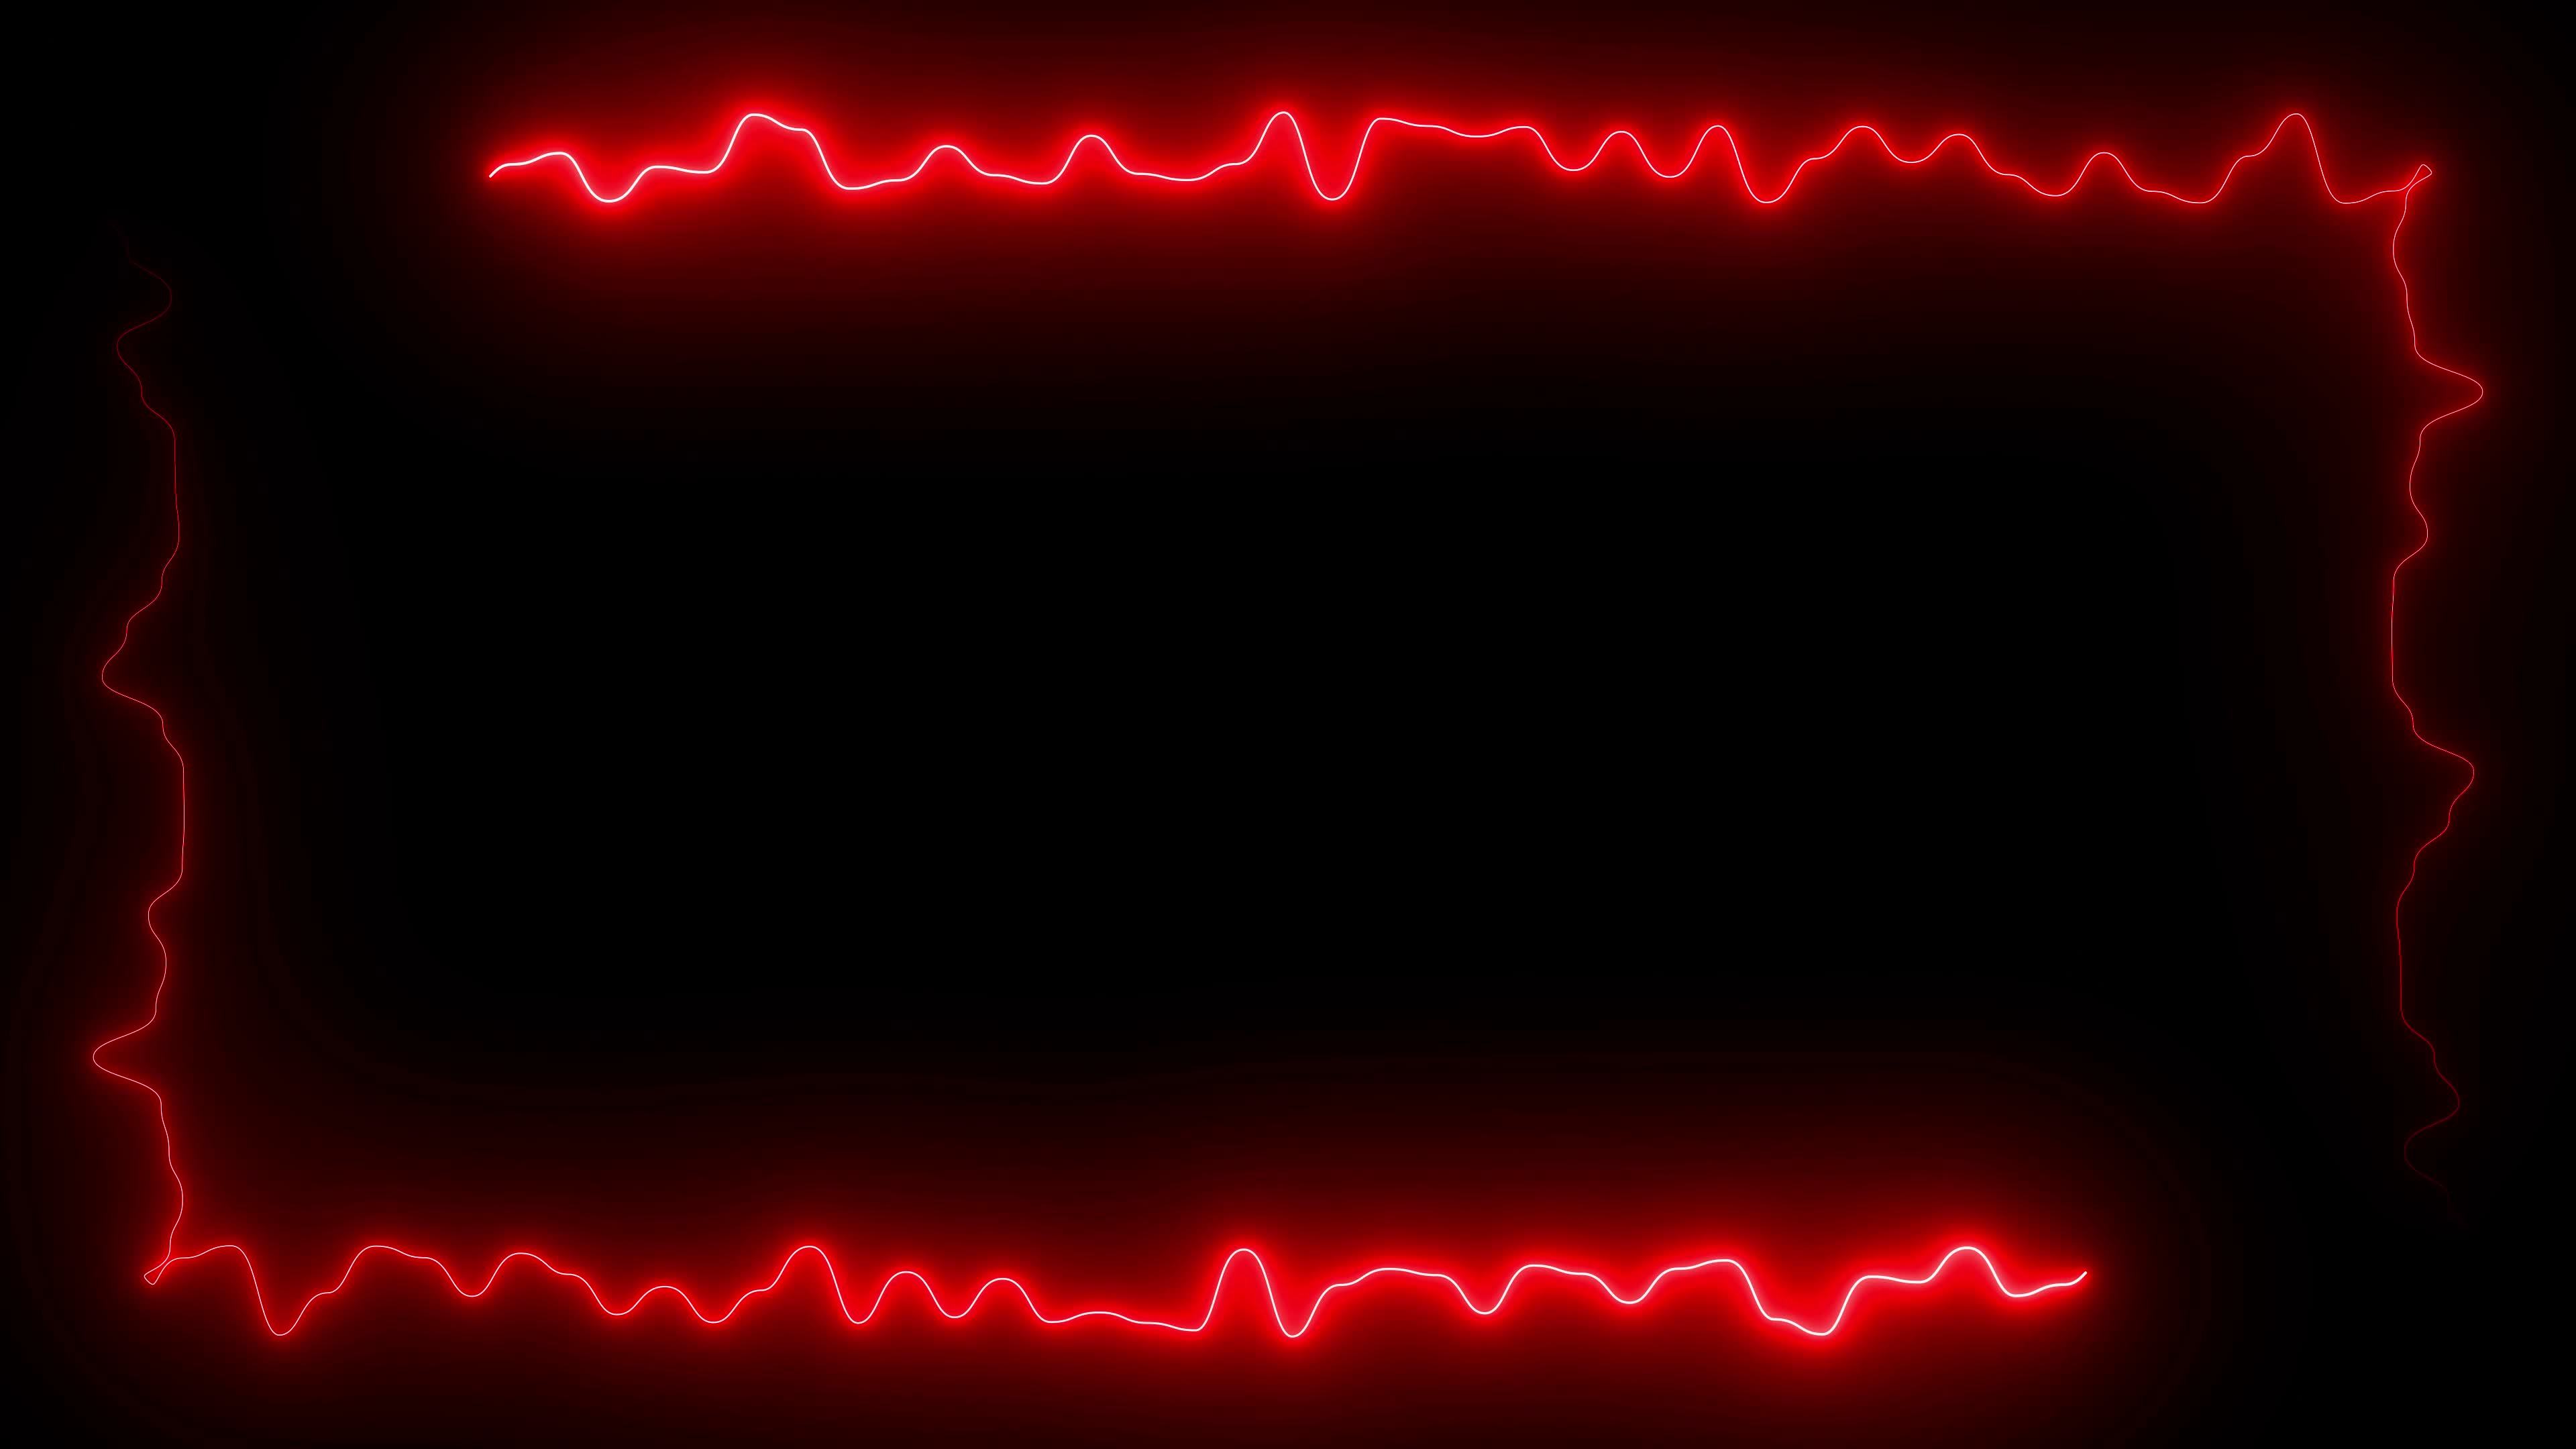 Hãy cùng chiêm ngưỡng khung đèn neon đỏ rực sáng trên nền đen với độ phân giải 4K và tốc độ khung hình 60fps thật sự ấn tượng. Hình ảnh này sẽ đưa bạn vào một không gian tràn đầy sức hấp dẫn và bí ẩn.